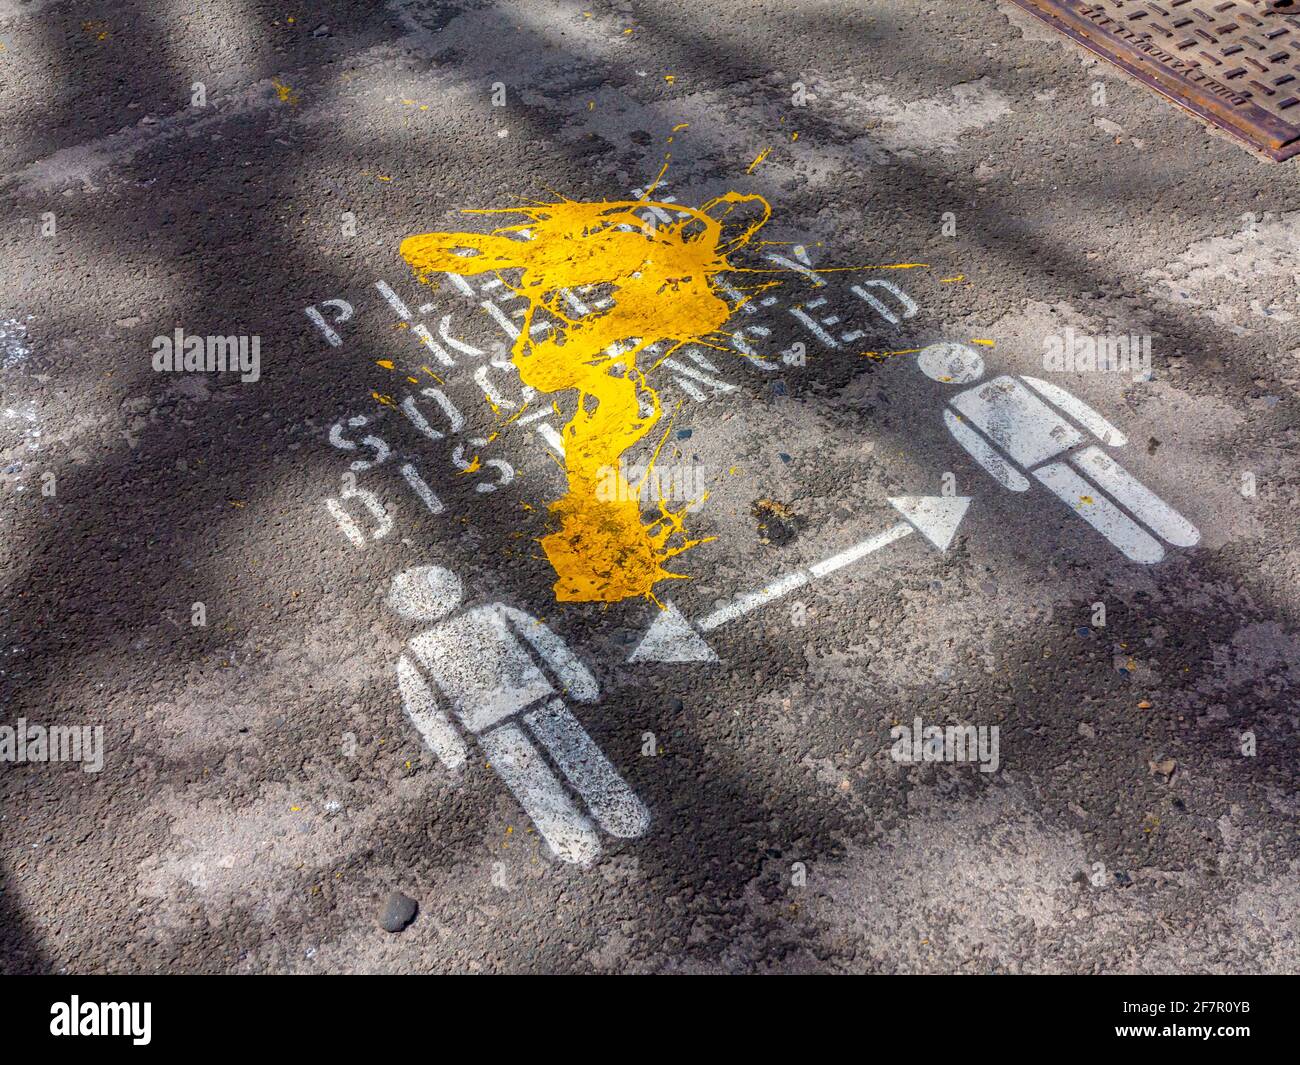 Peinture jaune au dessus de s'il vous plaît garder social distancé signe sur un trottoir dans le bain de Matlock Derbyshire Angleterre en avril 2021. Banque D'Images